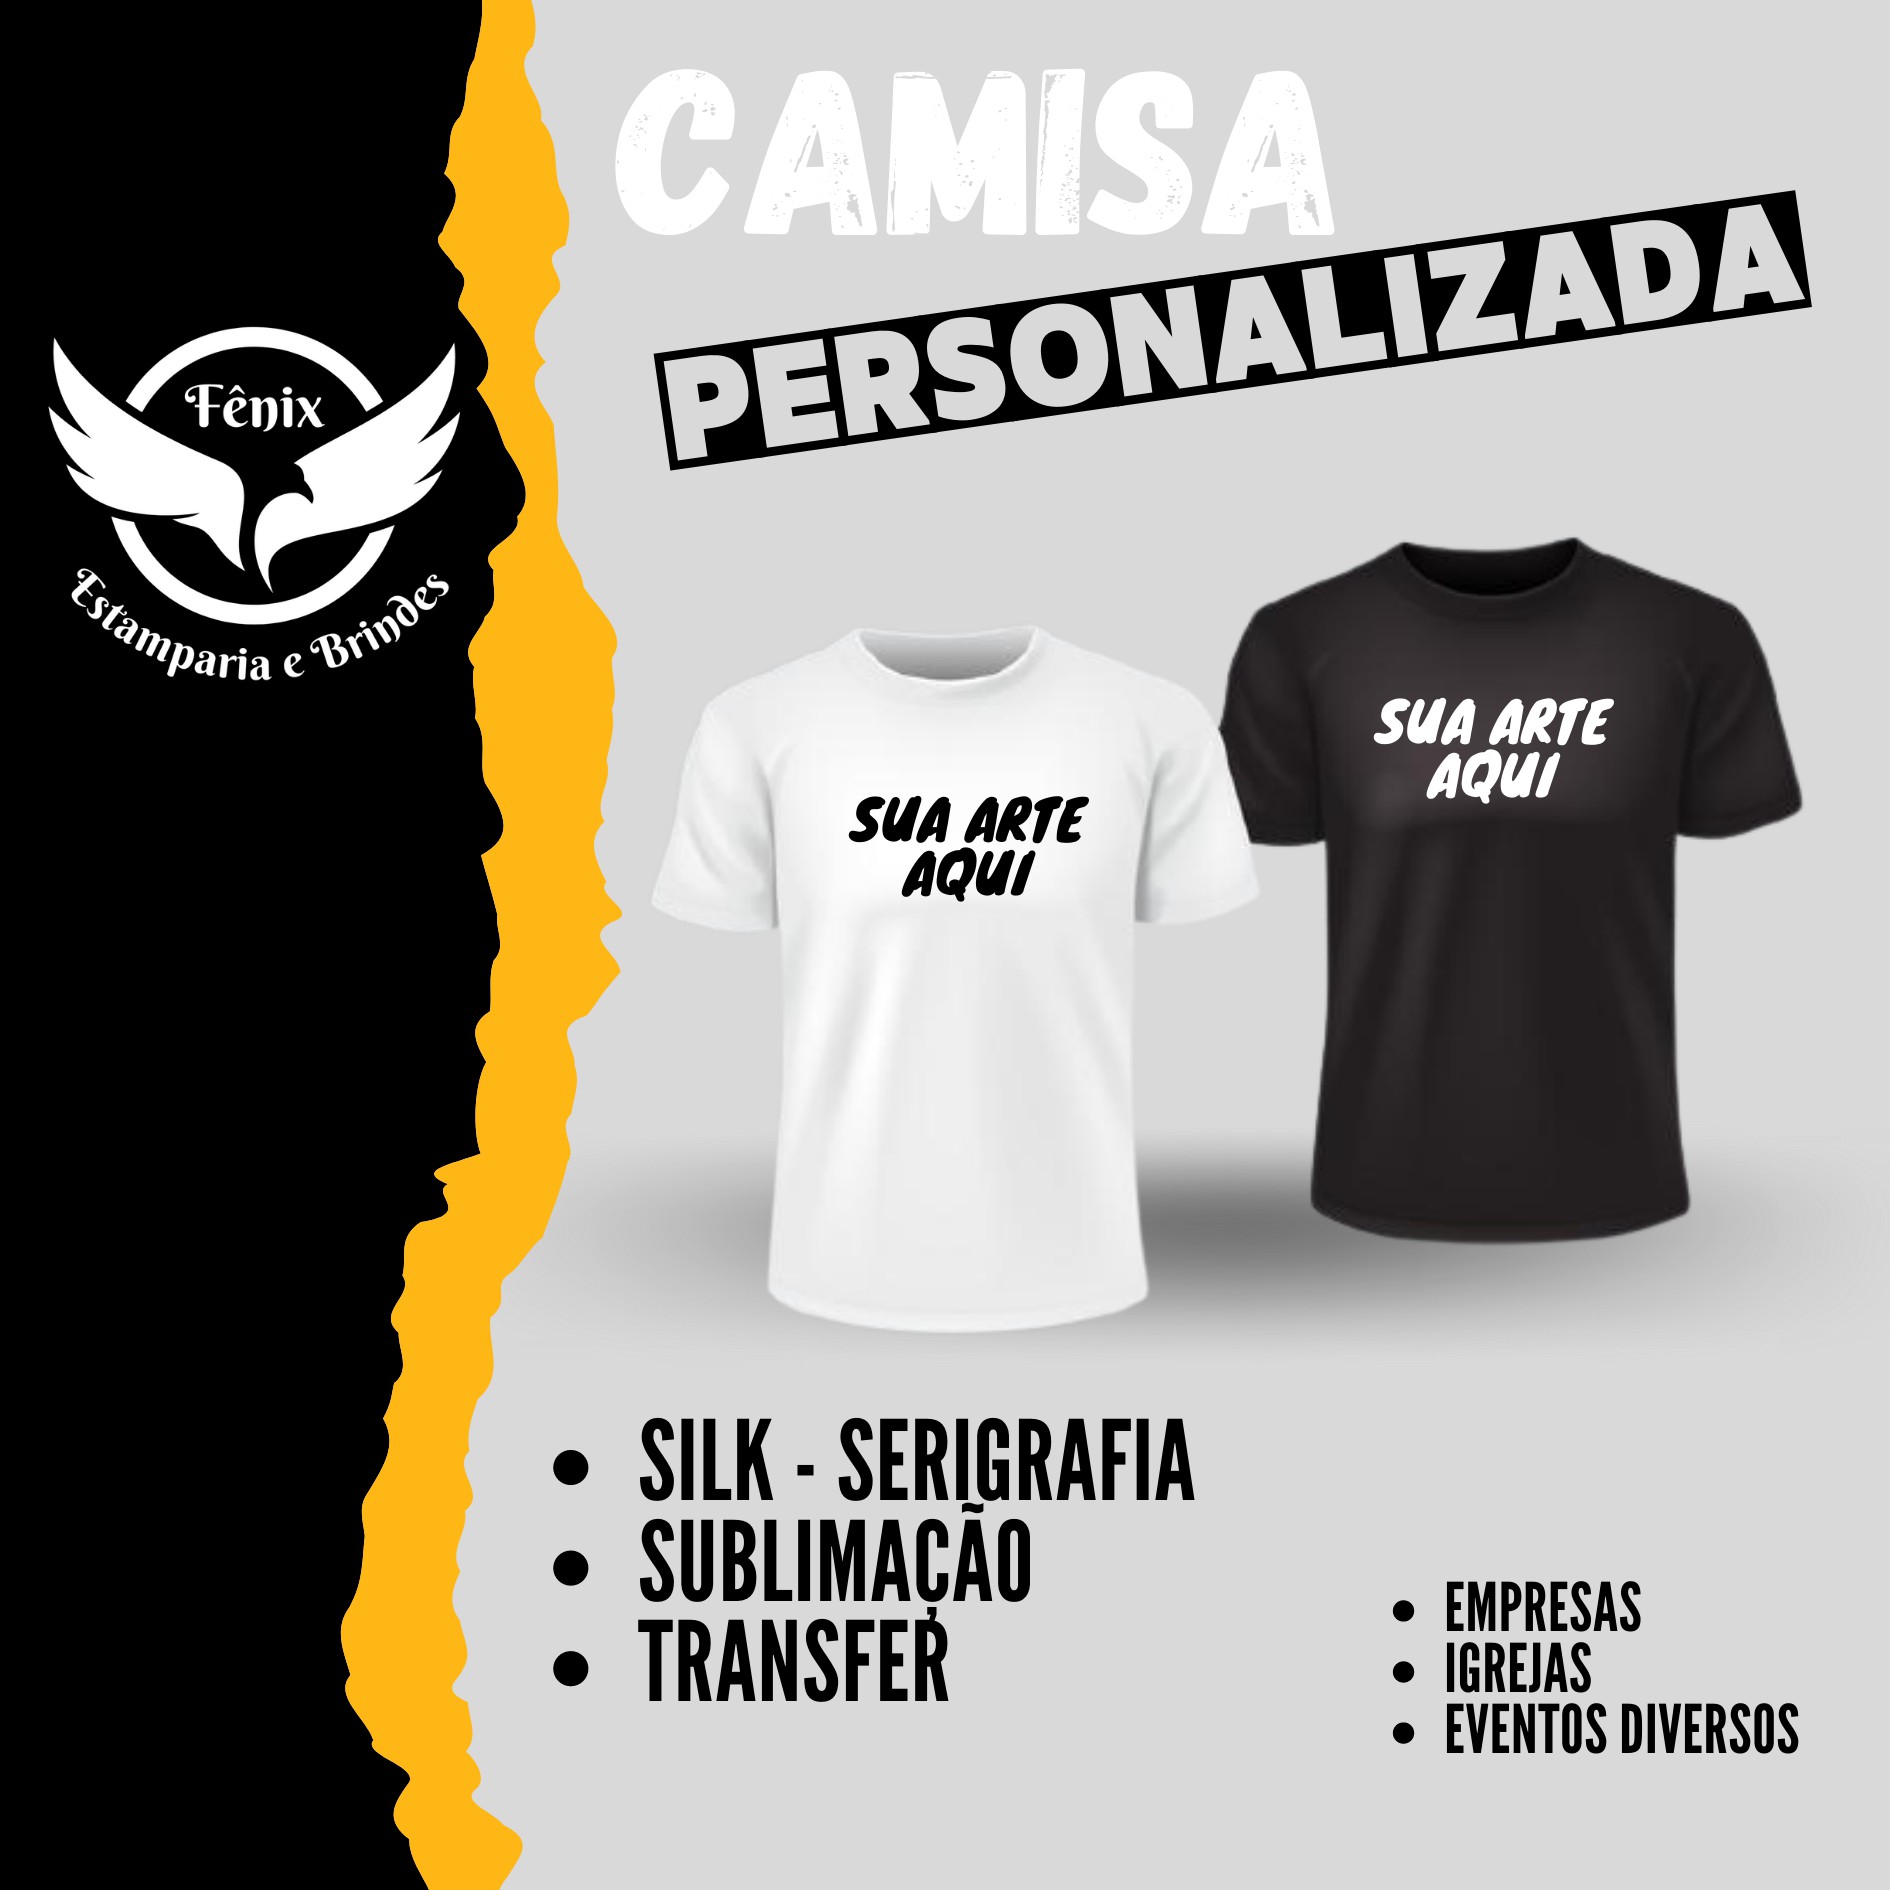 Camisas Personalizadas - Sublimação / Transfer / Silk - Serigrafia - Fênix  Estamparia e Brindes